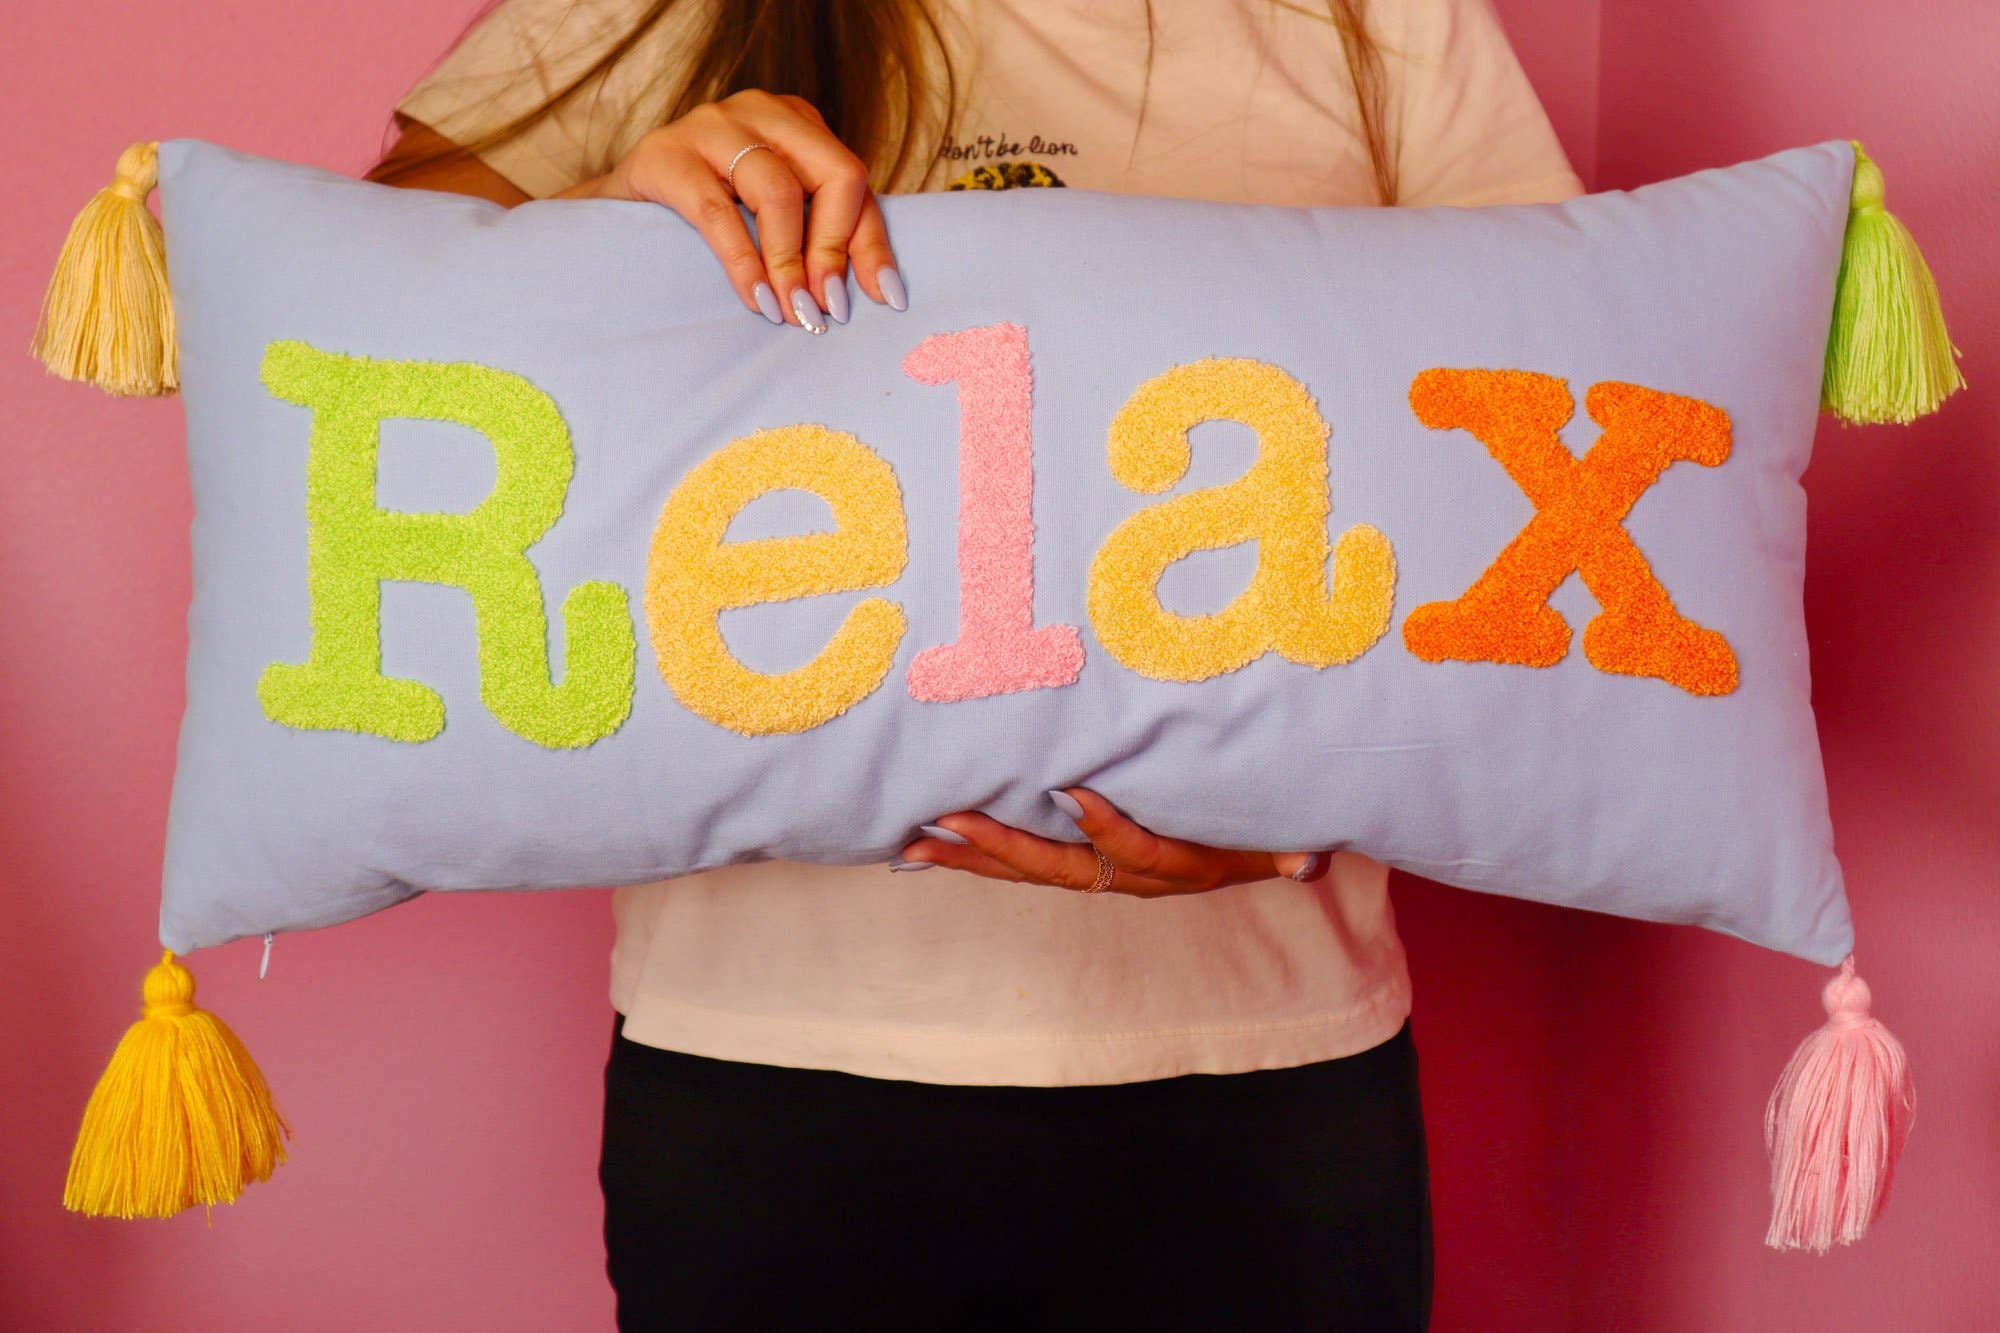 *Long Hook Pillow - Relax